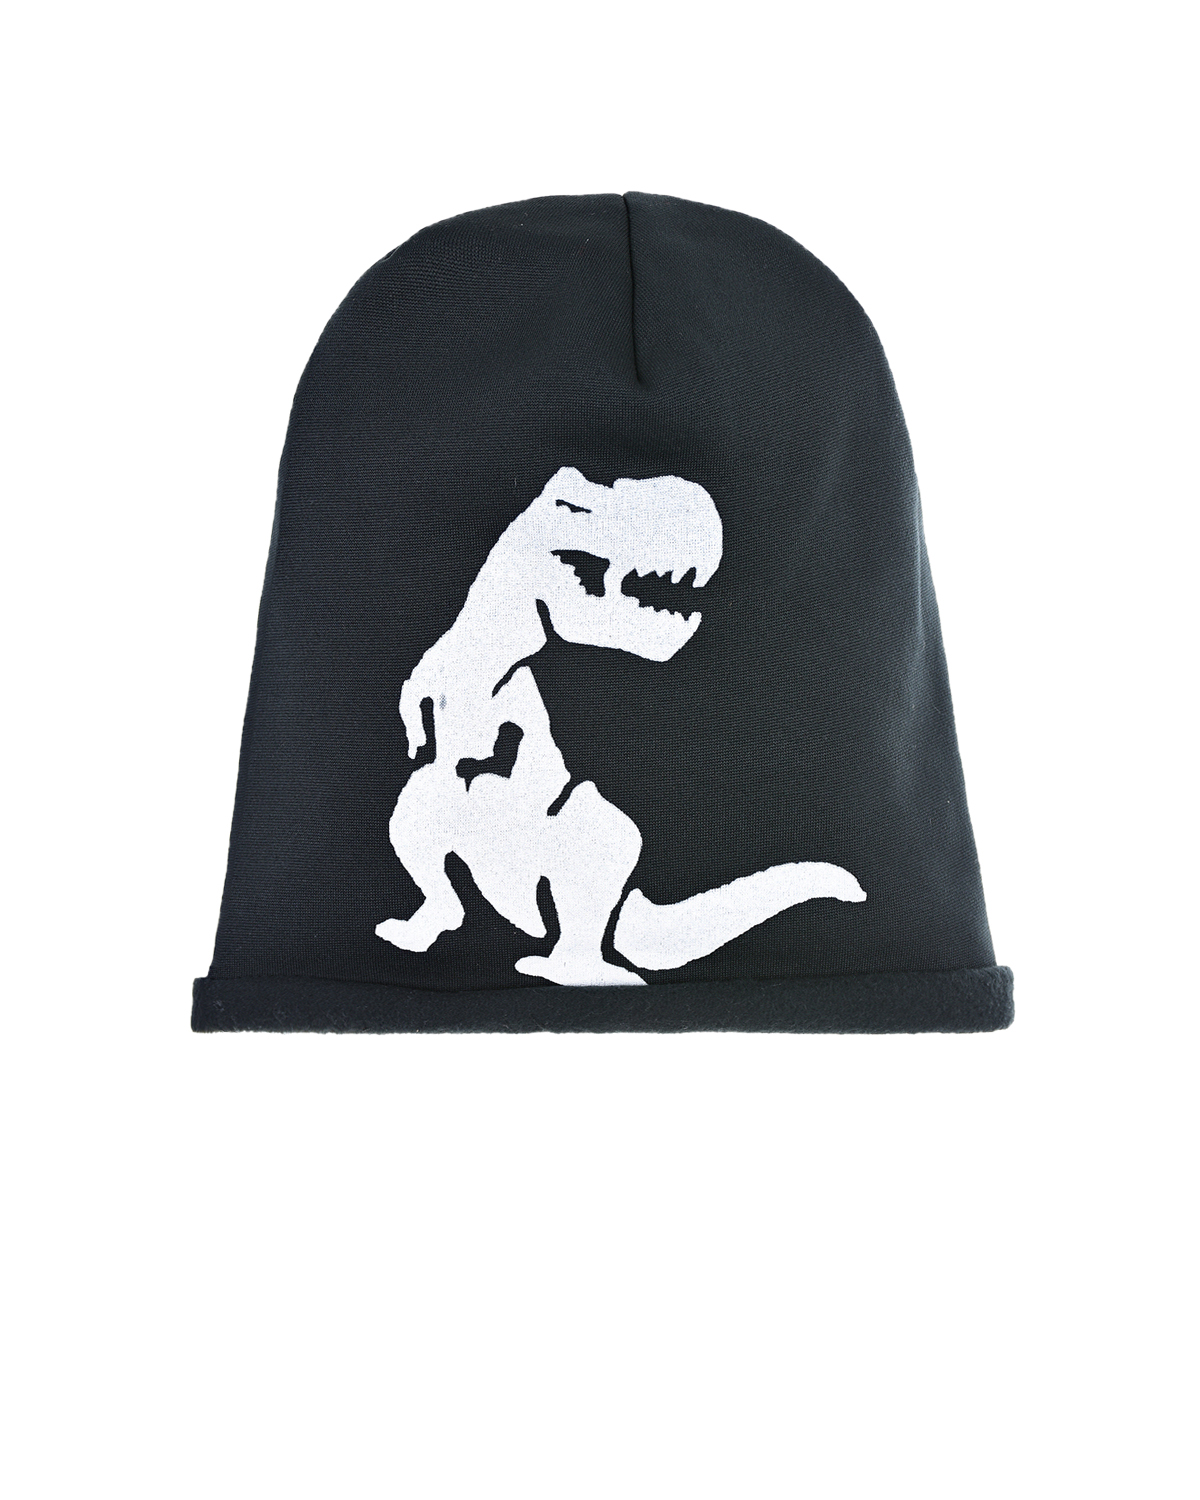 Черная шапка с принтом "Динозавр" Catya детская, размер 49, цвет черный - фото 1